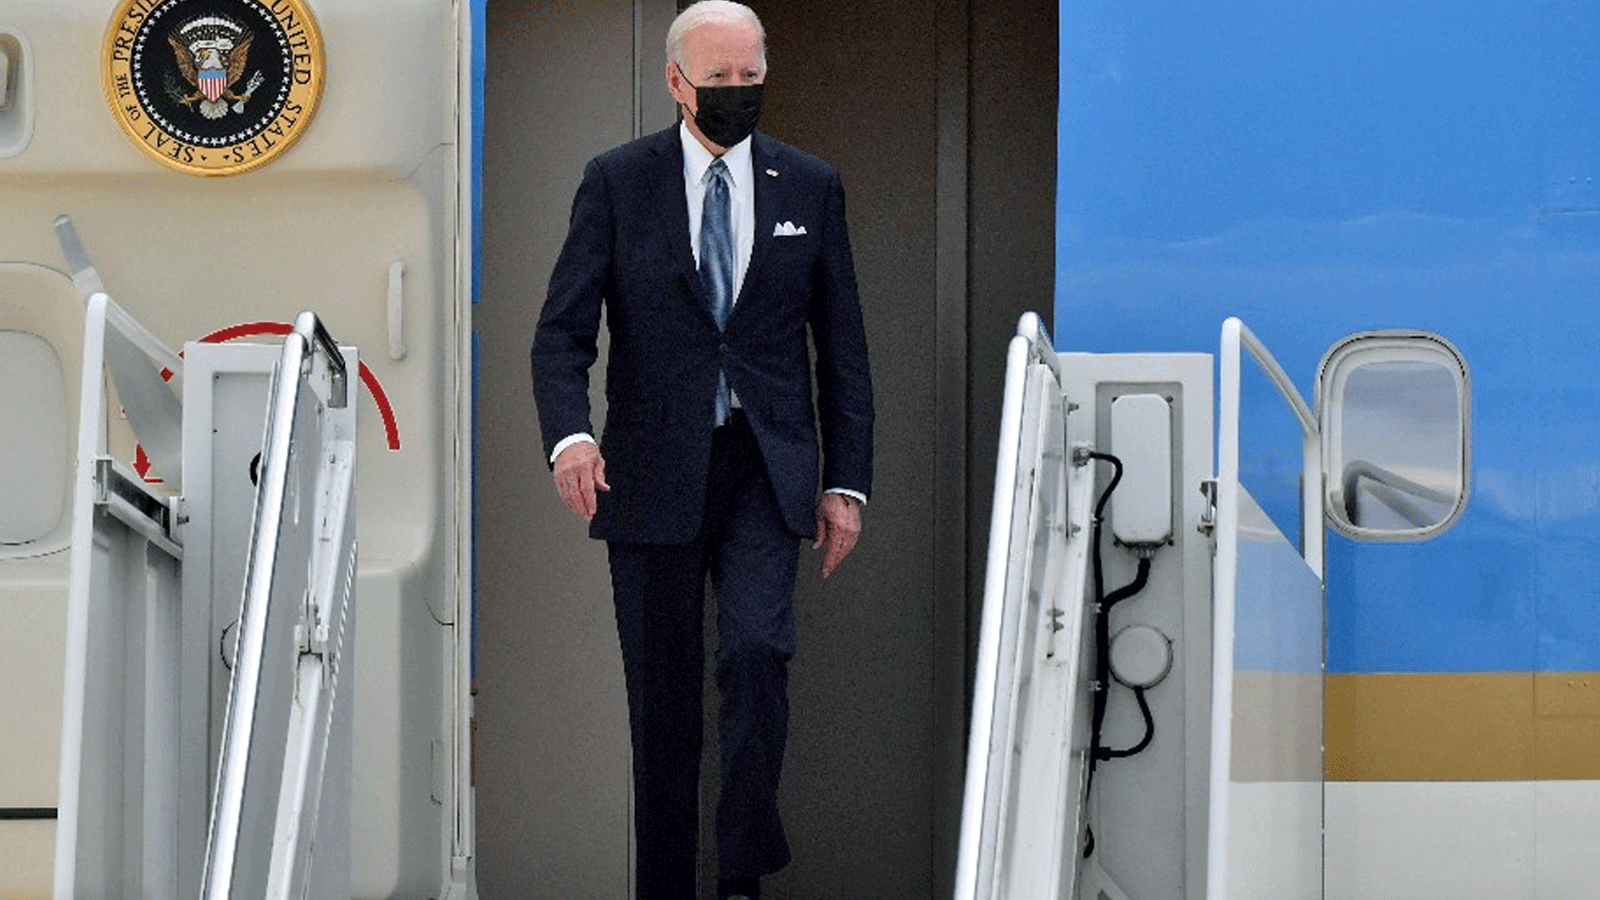  الرئيس الأميركي بايدن يهبط في اليابان، وهي المحطة الثانية من رحلته الآسيوية